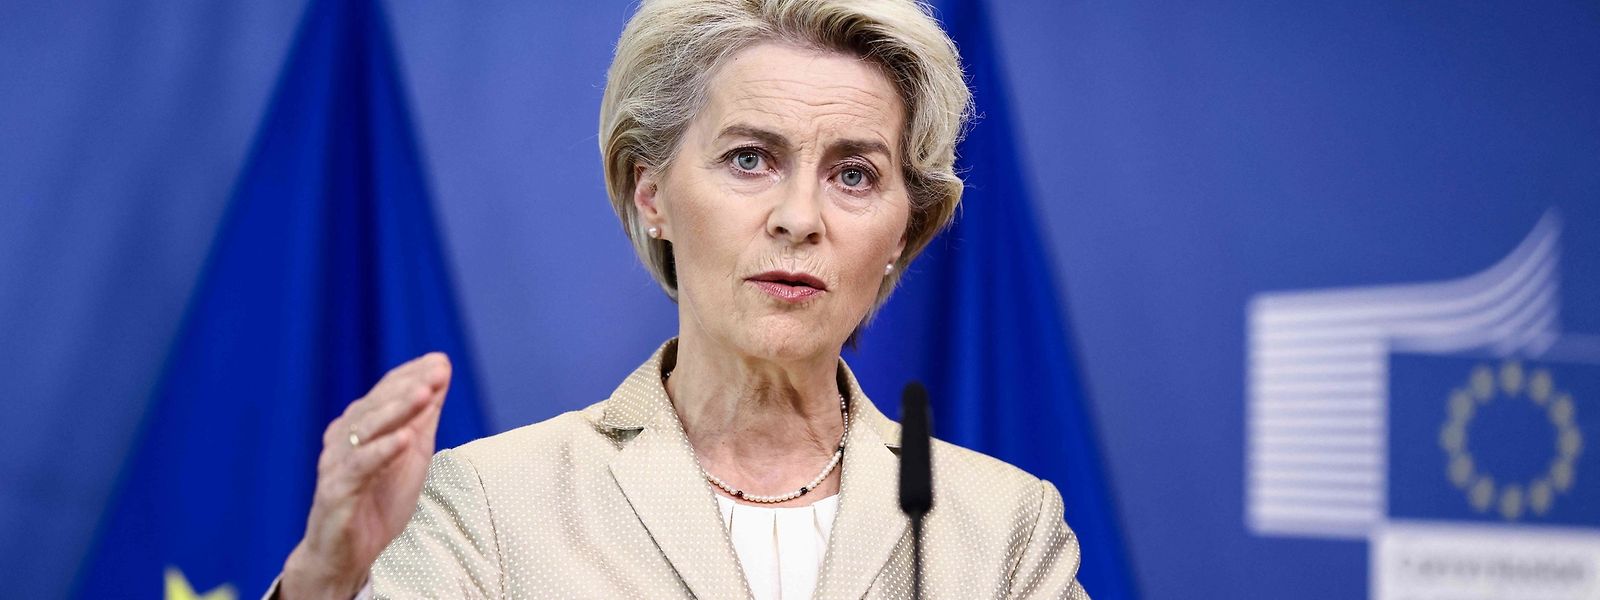 „Wir haben hart daran gearbeitet, Europa vor den Folgen der Krise auf den Energiemärkten zu schützen und sind jetzt besser auf diesen Winter vorbereitet“, sagte EU-Kommissionspräsidentin Ursula von der Leyen am Dienstag in Brüssel.